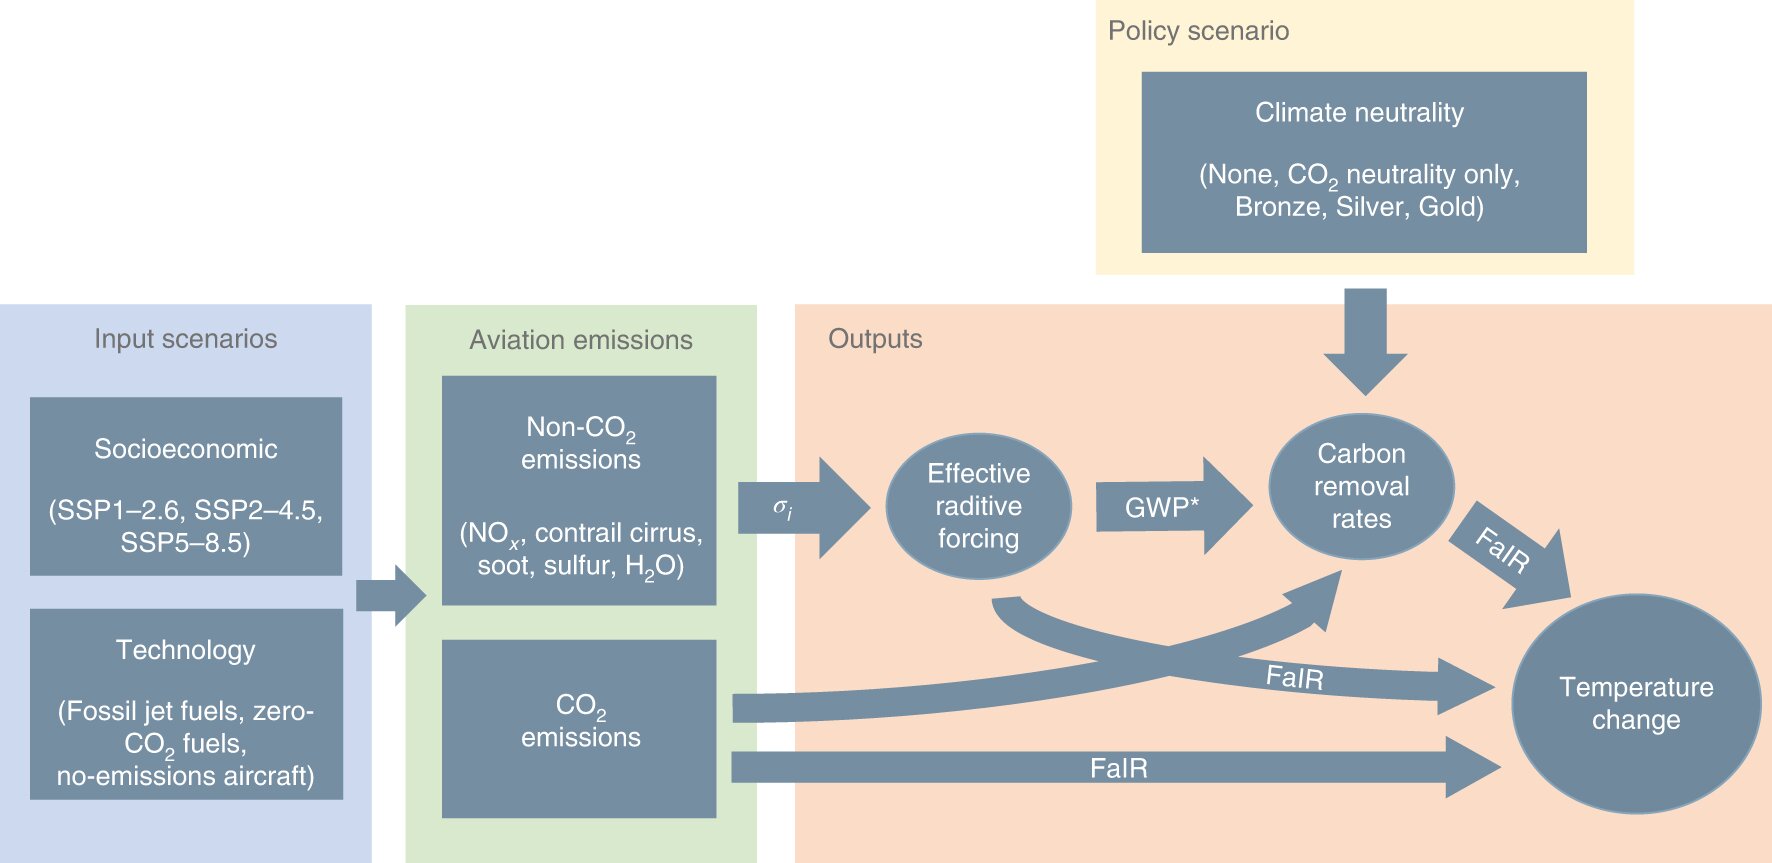 Netto-Null-CO2-Emissionen für Flugzeuge vernachlässigen die Nicht-CO2-Klimaauswirkungen